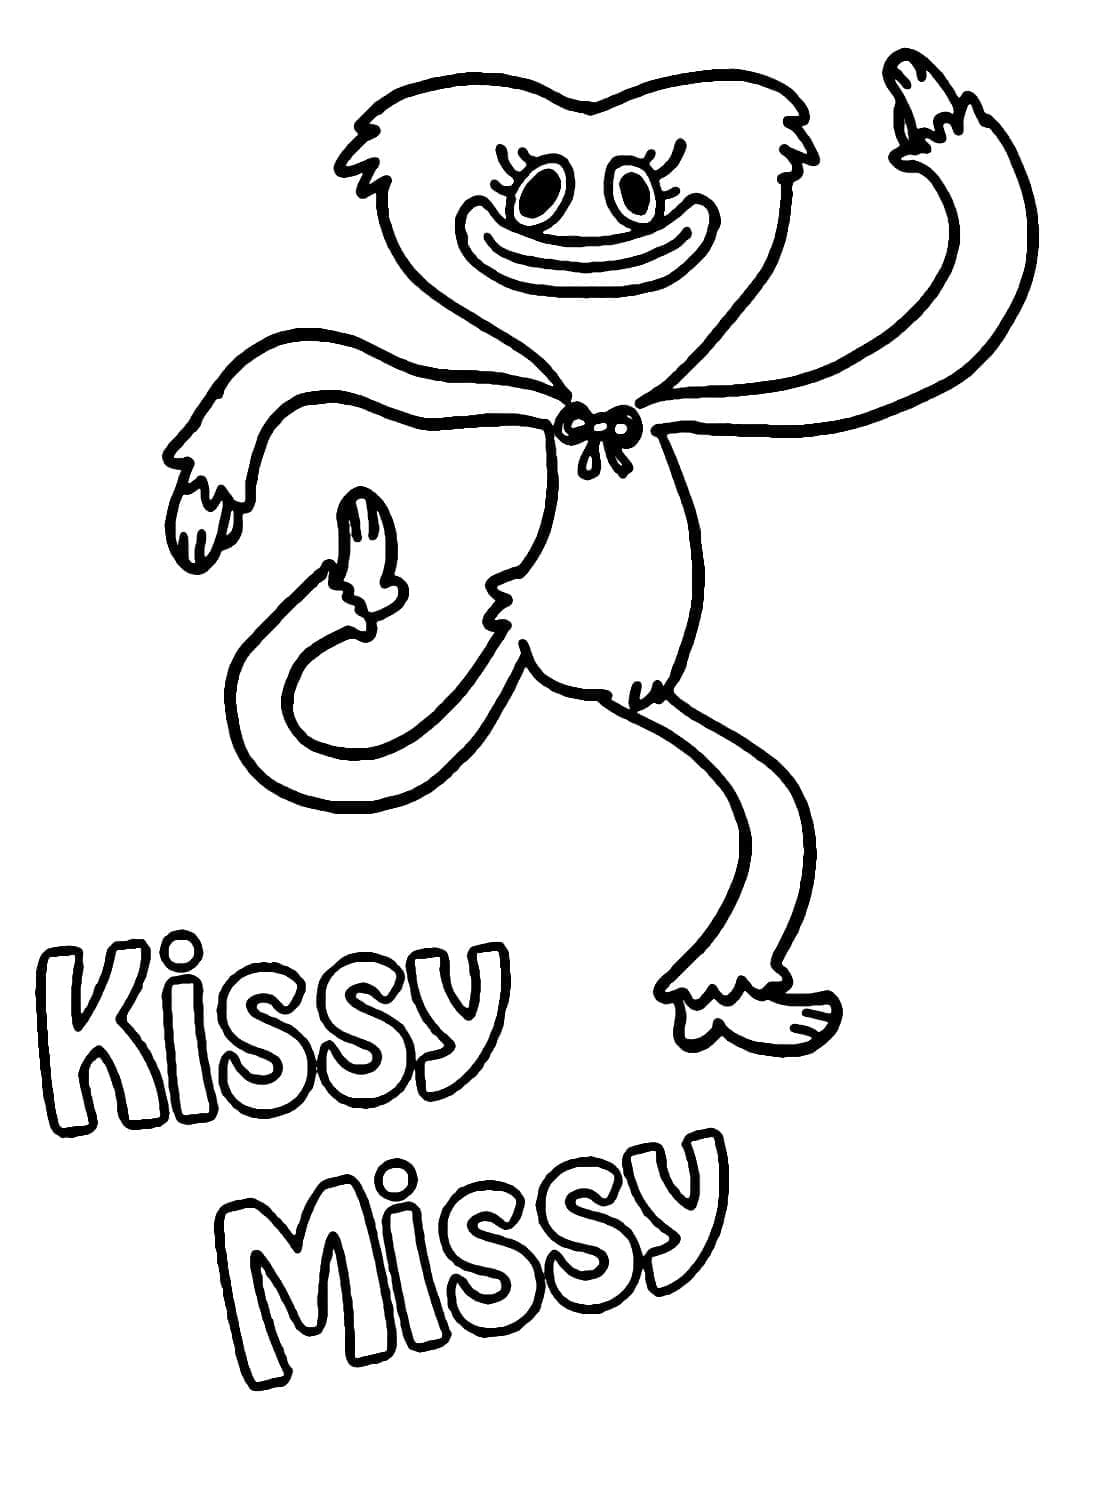 Grappige Kissy Missy